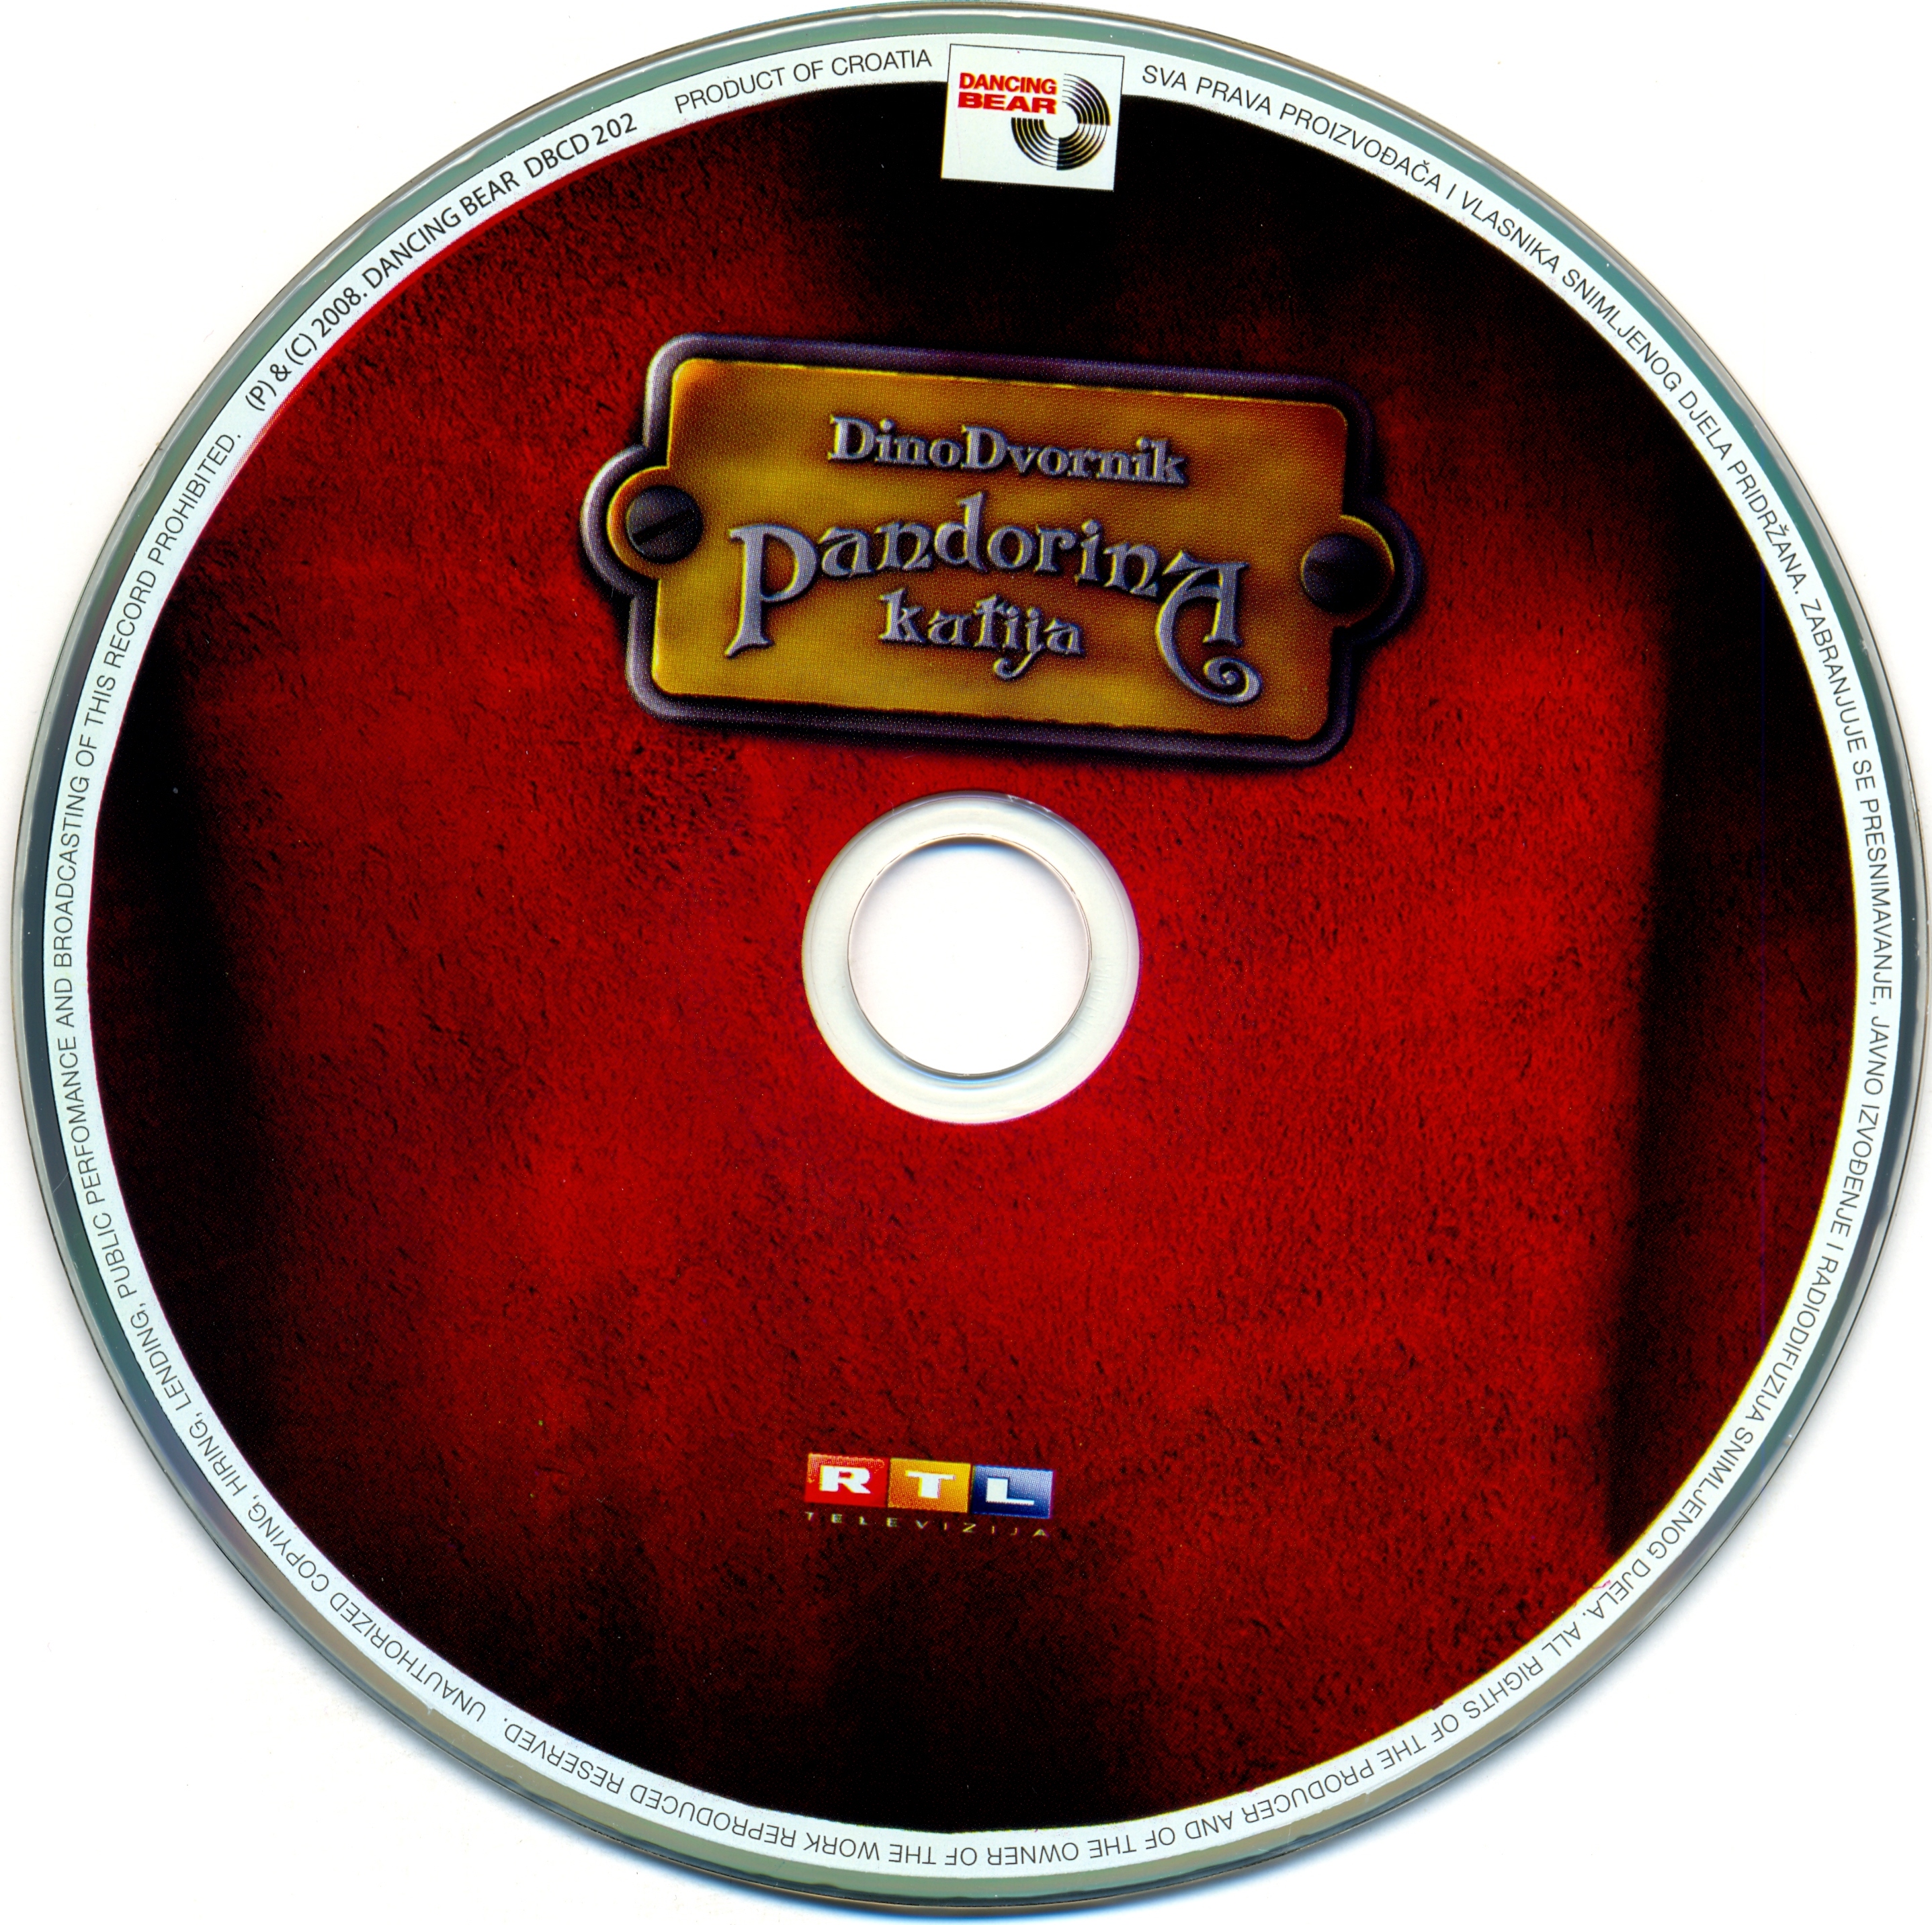 Dino Dvornik Pandorina kutija 2008 cd